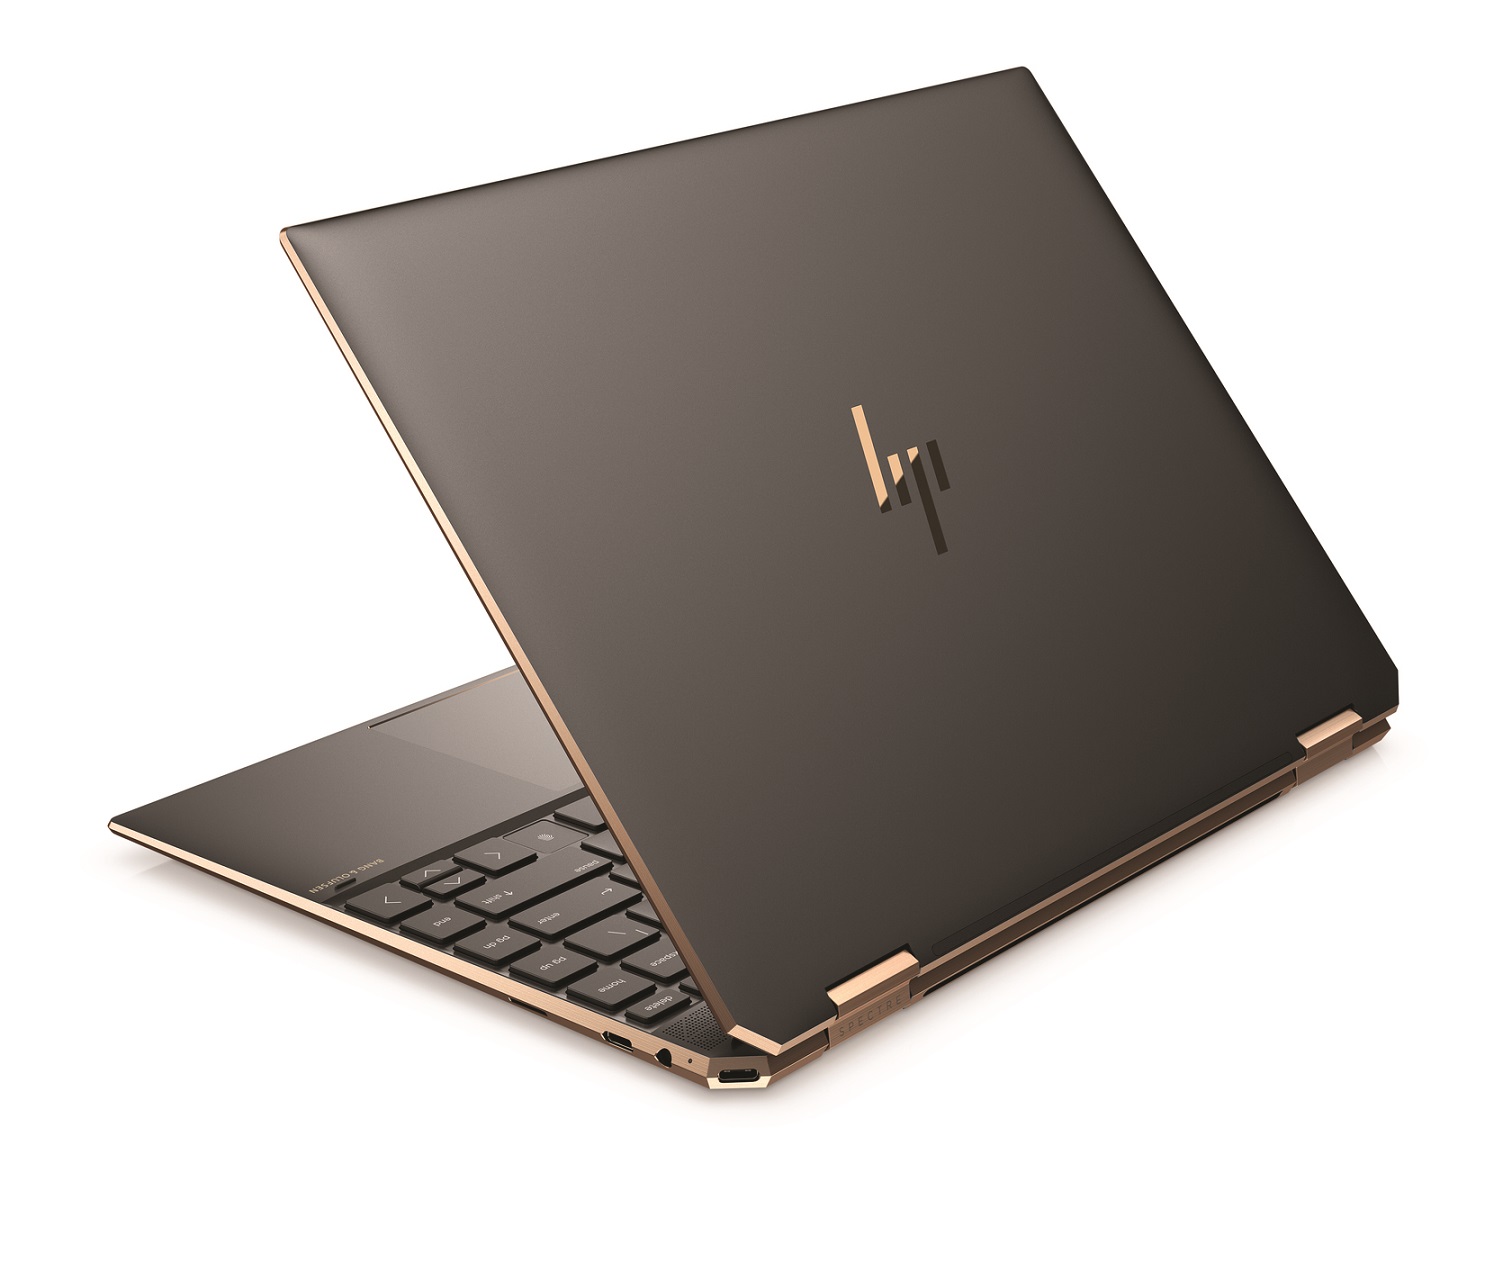 HP prezentuje nowego laptopa konwertowalnego Spectre x360 14 - Portal telekomunikacyjny Telix.pl